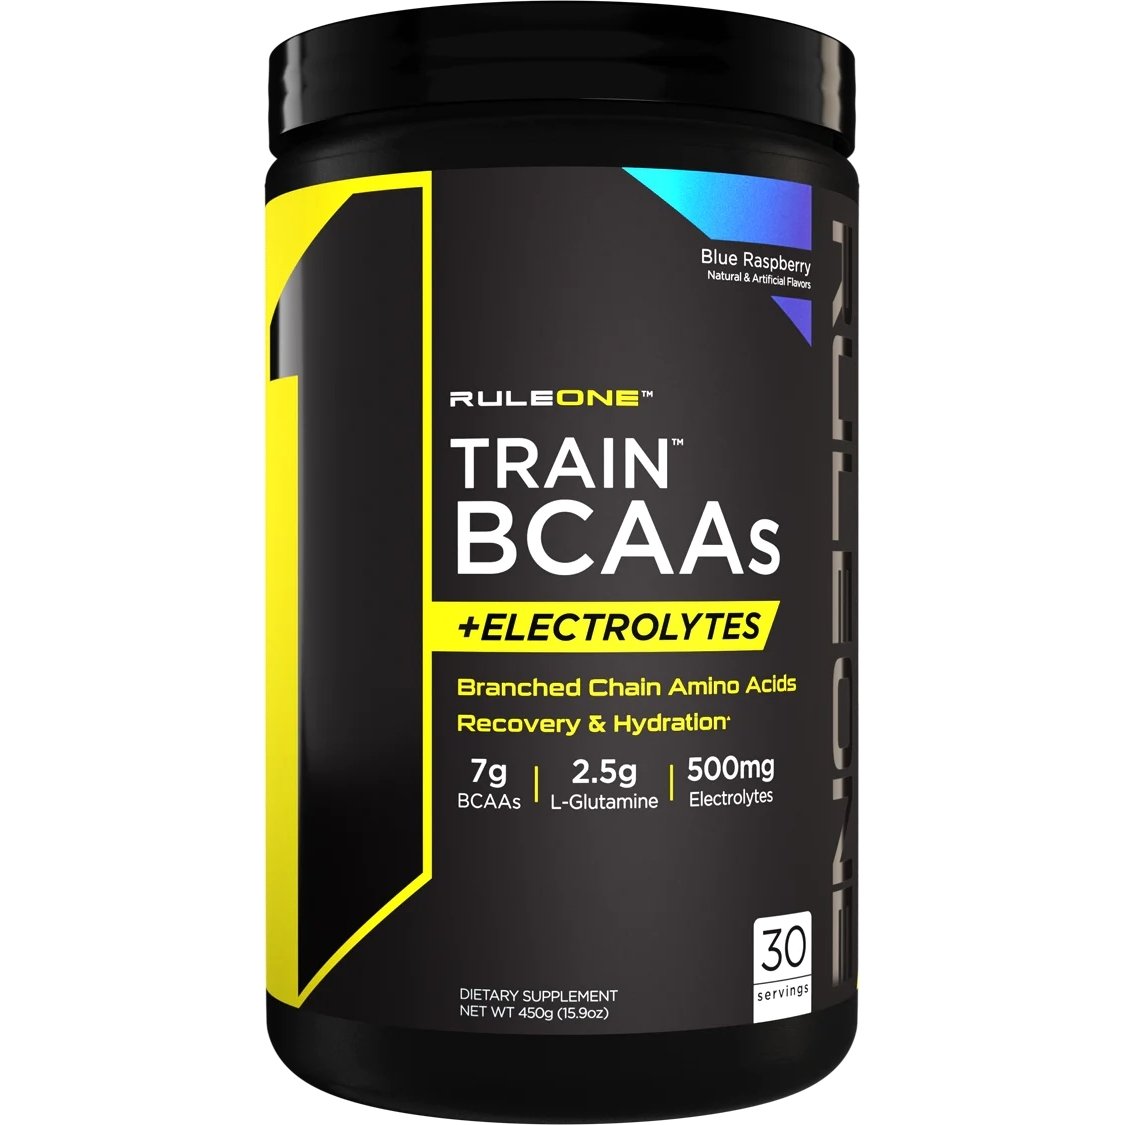 Аминокислота BCAA Rule 1 Train BCAAs + Electrolytes, 450 грамм Ежевика,  мл, Rule One Proteins. BCAA. Снижение веса Восстановление Антикатаболические свойства Сухая мышечная масса 